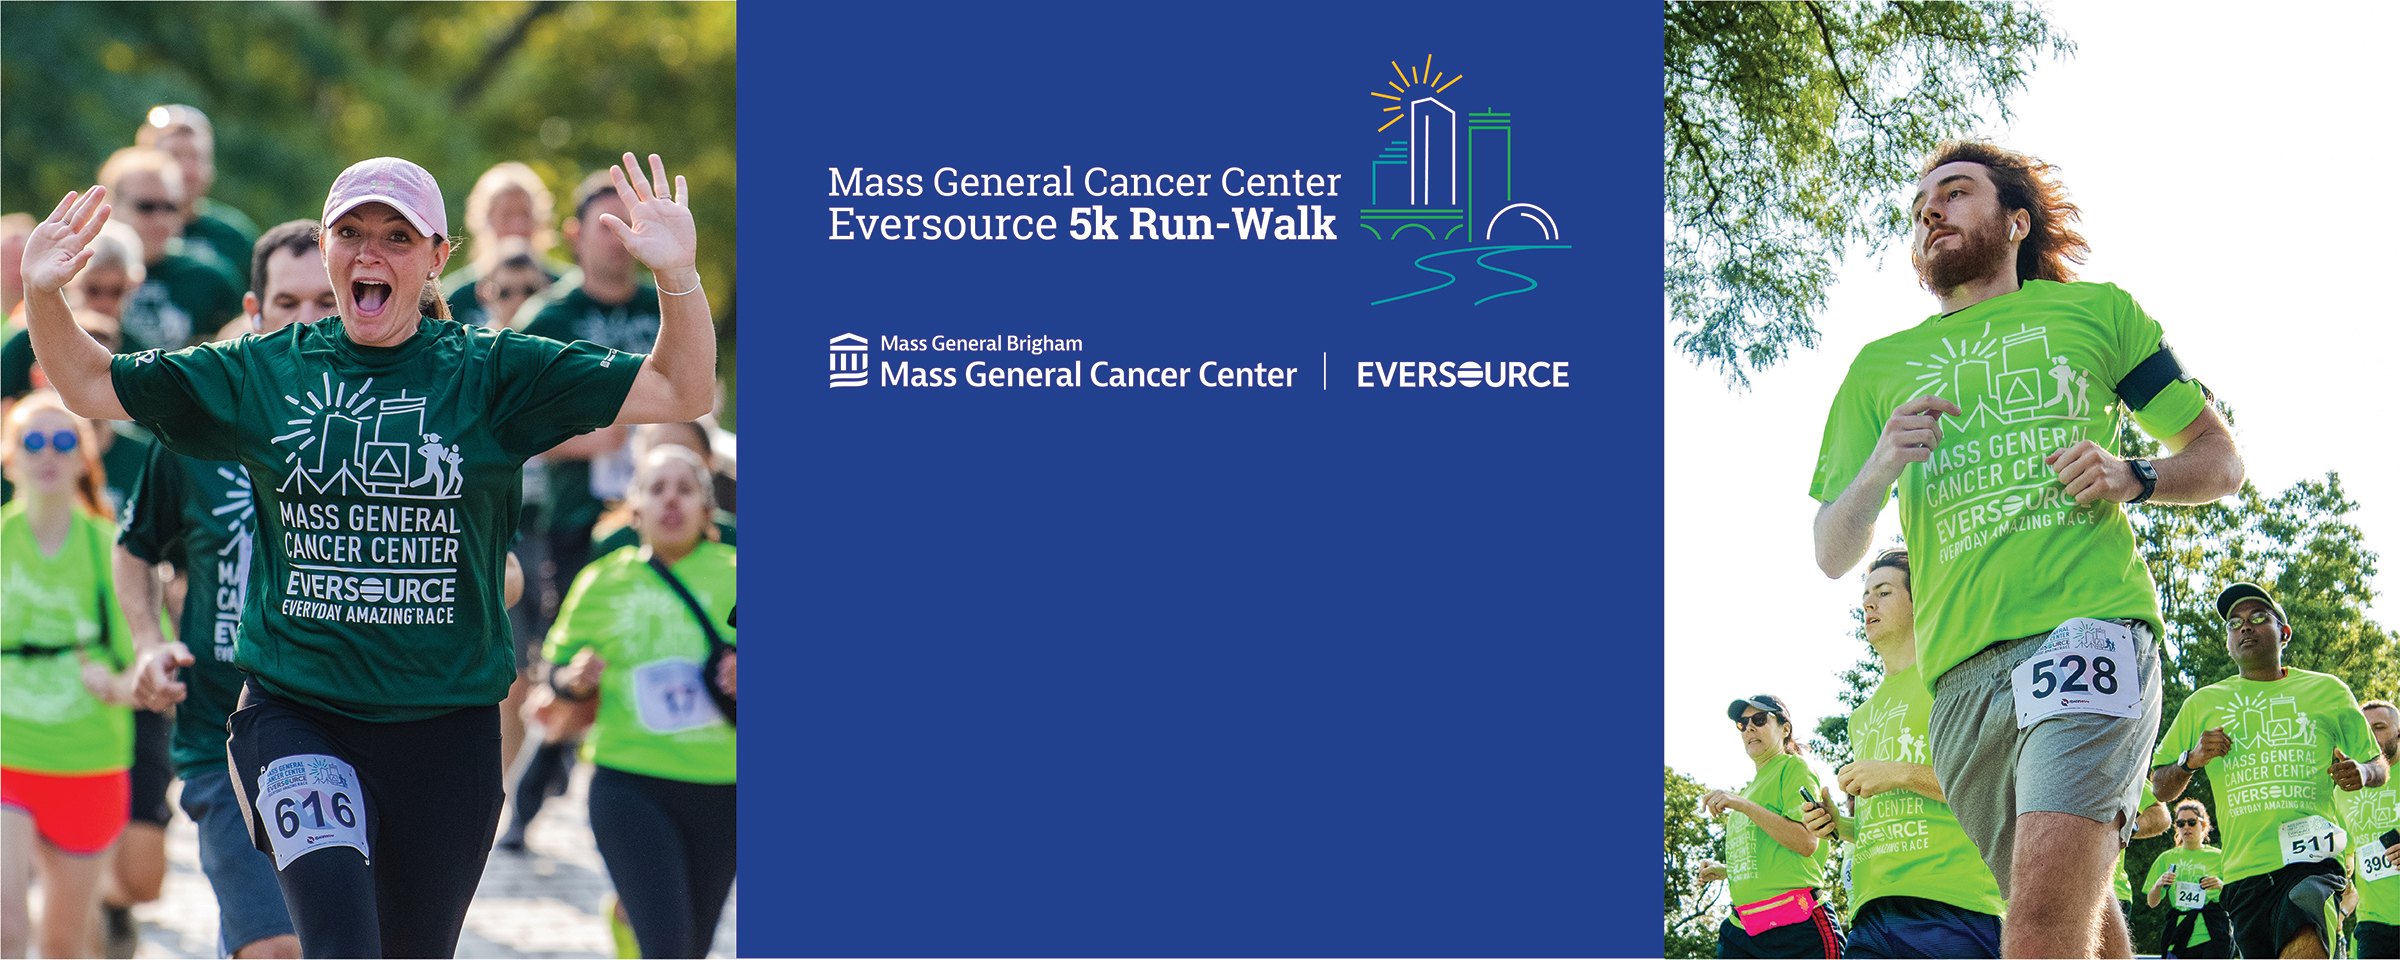 Mass General Cancer Center Eversource 5k Run-Walk